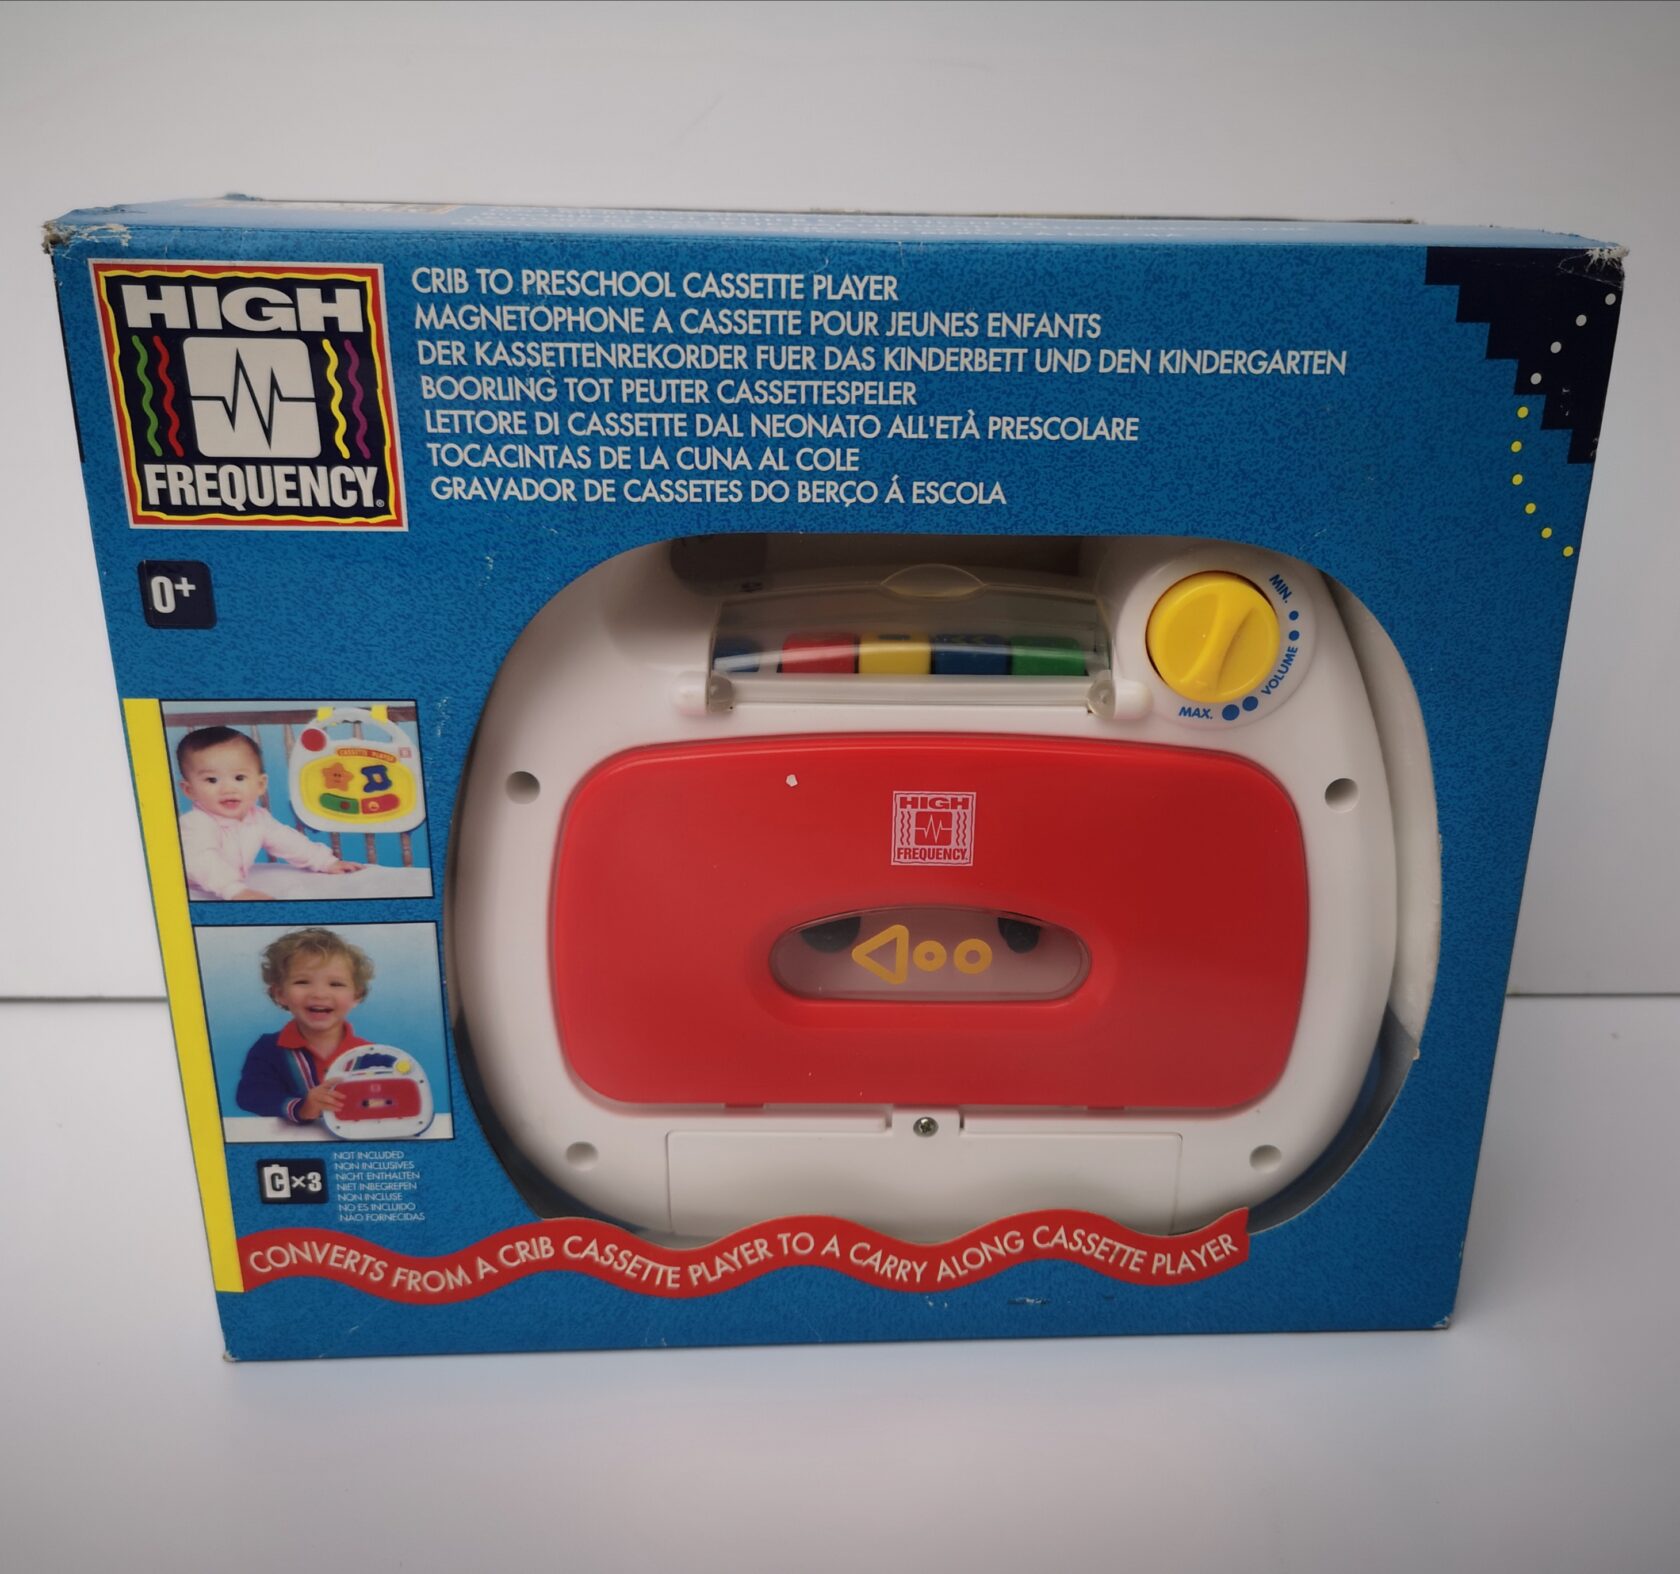 Lettore audio cassette per bambini - Ferrari Giocattoli